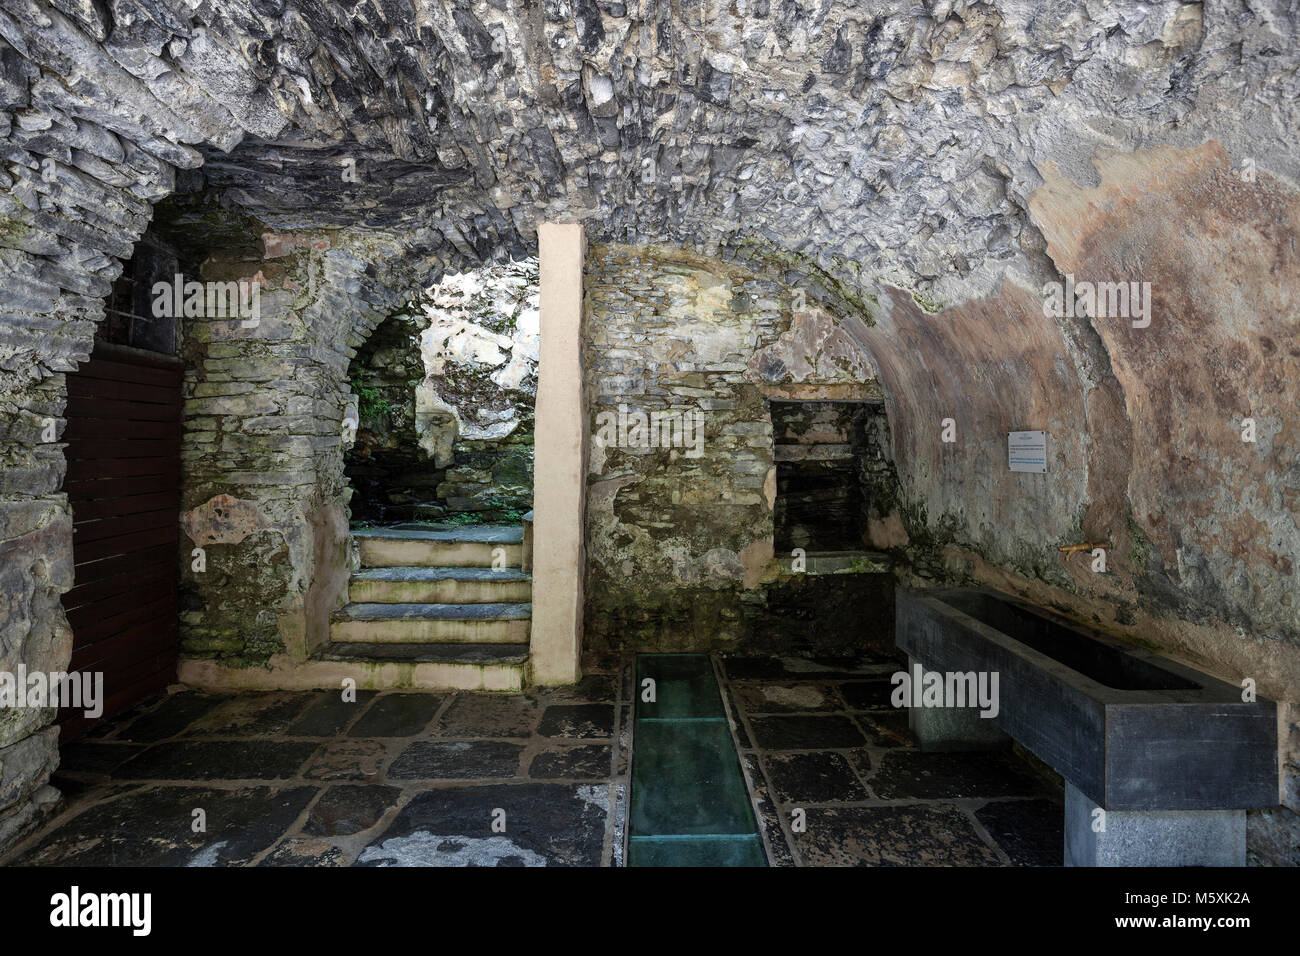 La rovina, vecchio bagno pubblico di Craveggia, Bagni di Craveggia, Piemonte, Italia Foto Stock